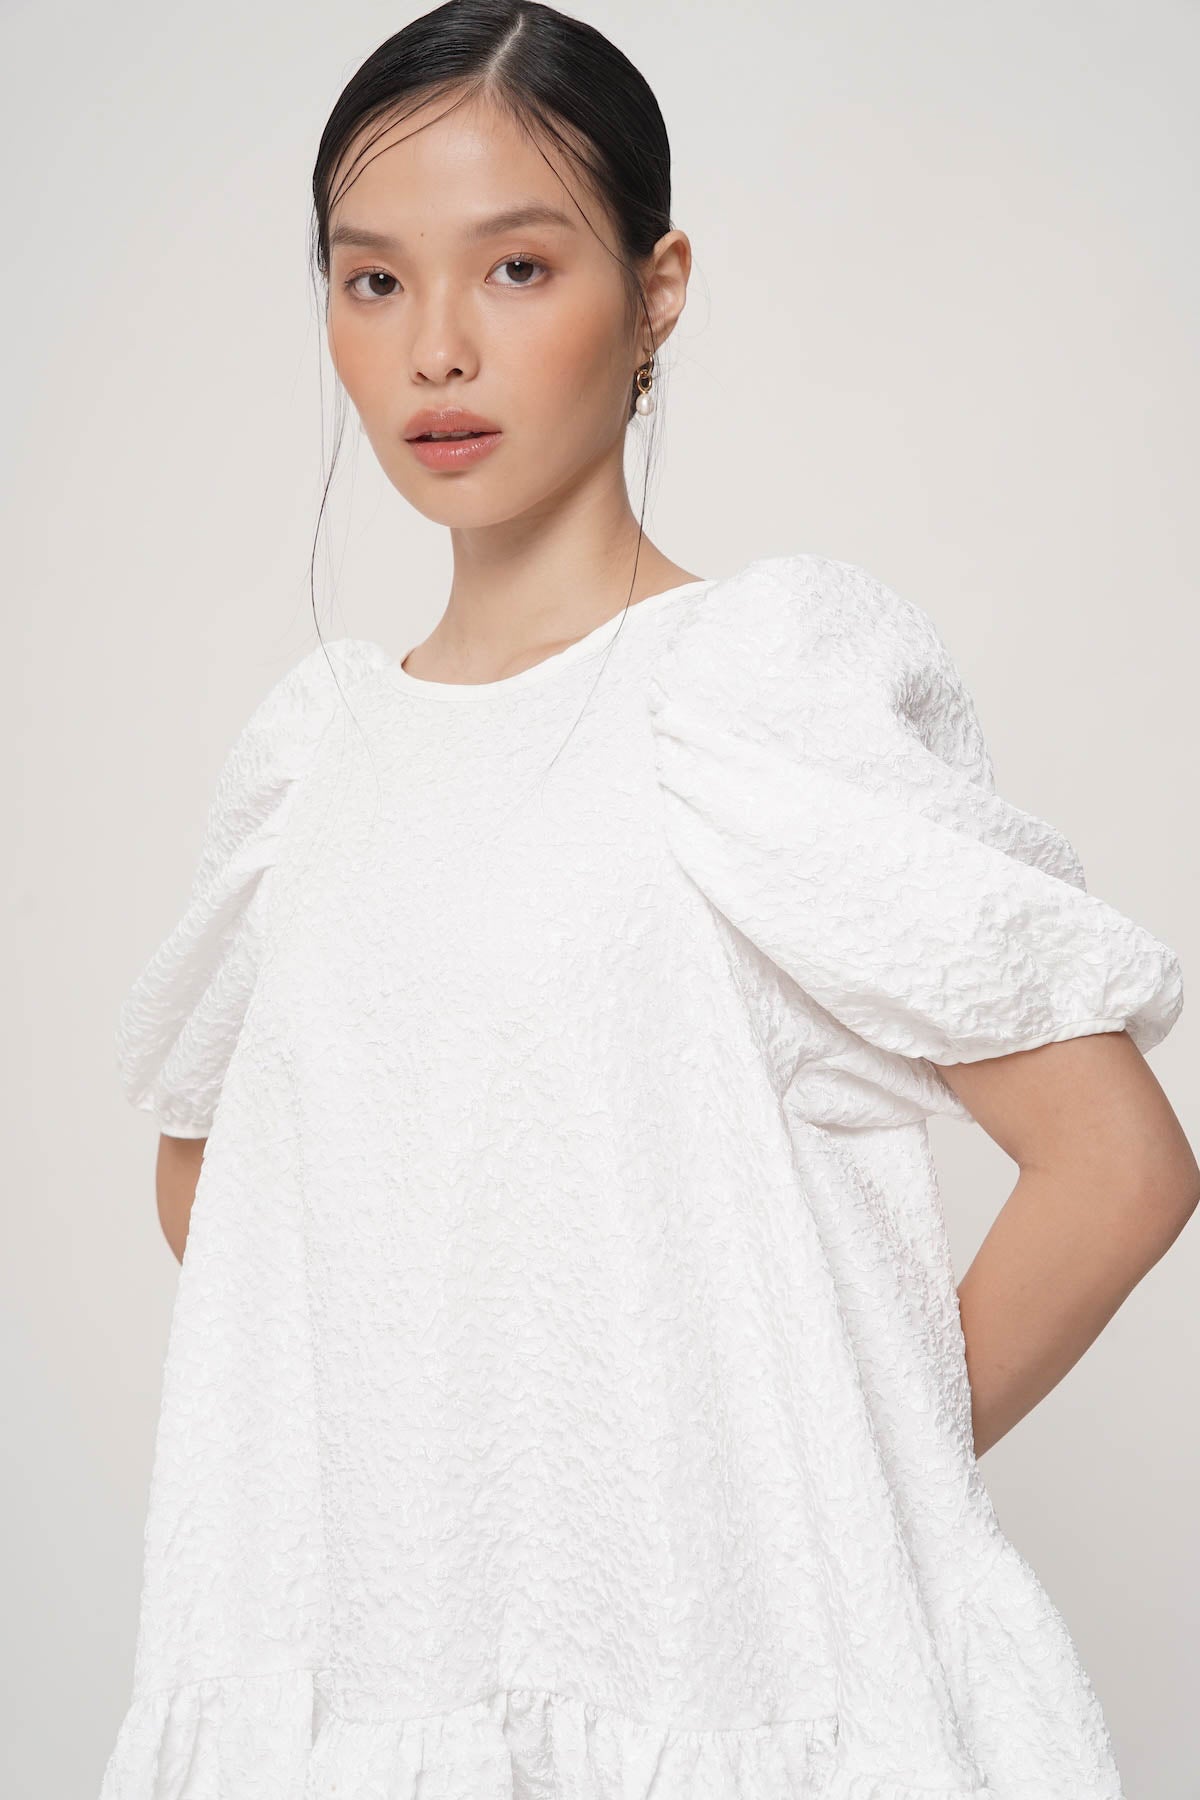 Yubi Mini Dress In White